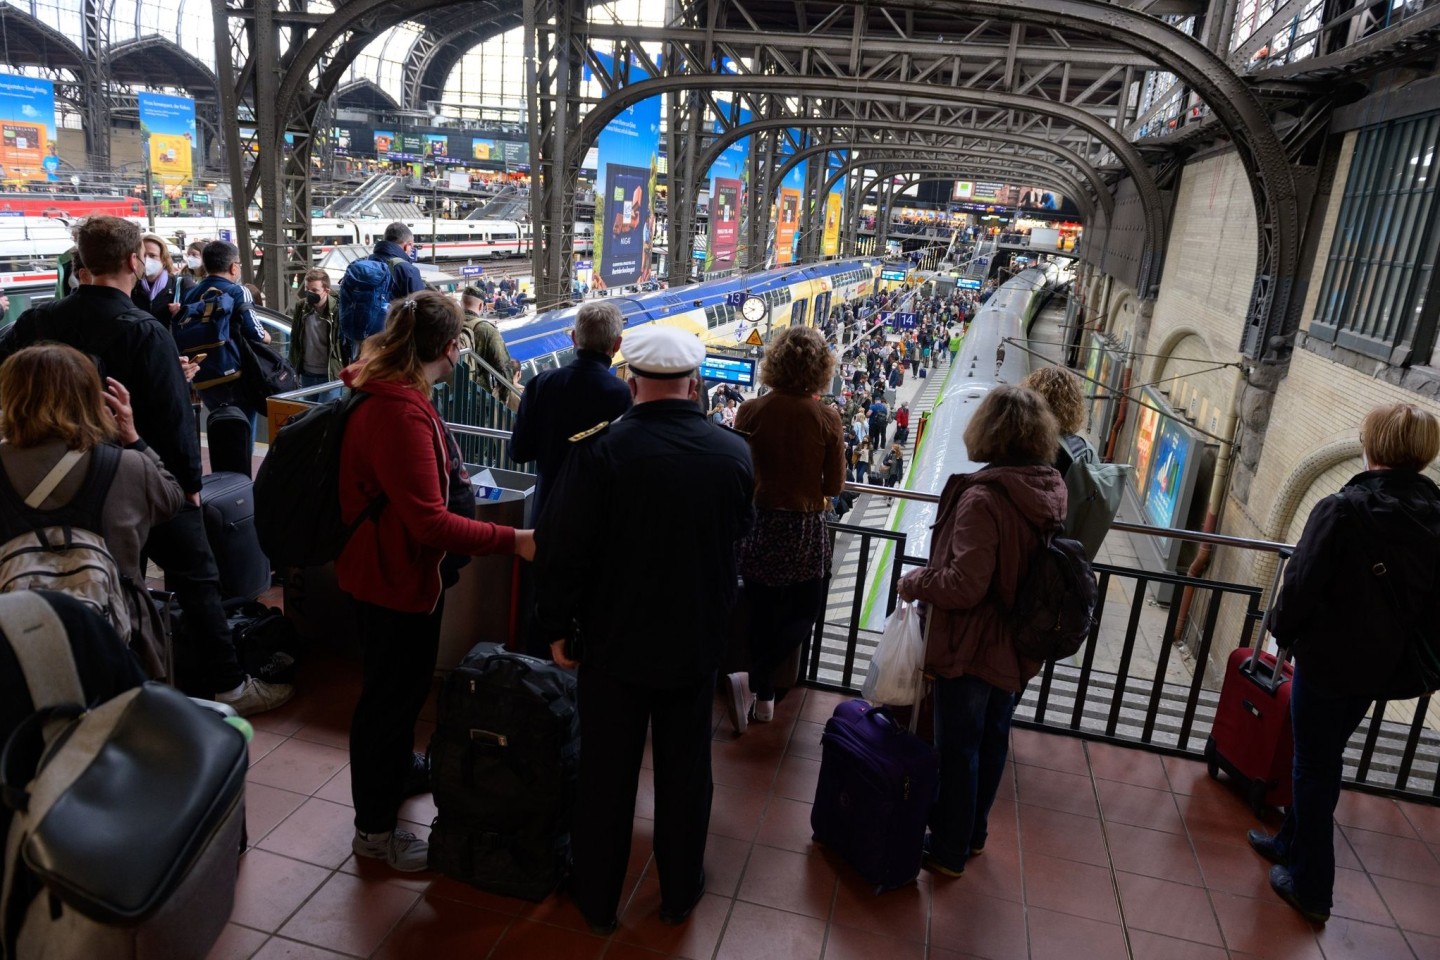 Reisende warten im Hamburger Hauptbahnhof auf ihre Züge. Wegen eines Kabelbrandes kommt es im Fernverkehr zu starken Beeinträchtigungen.